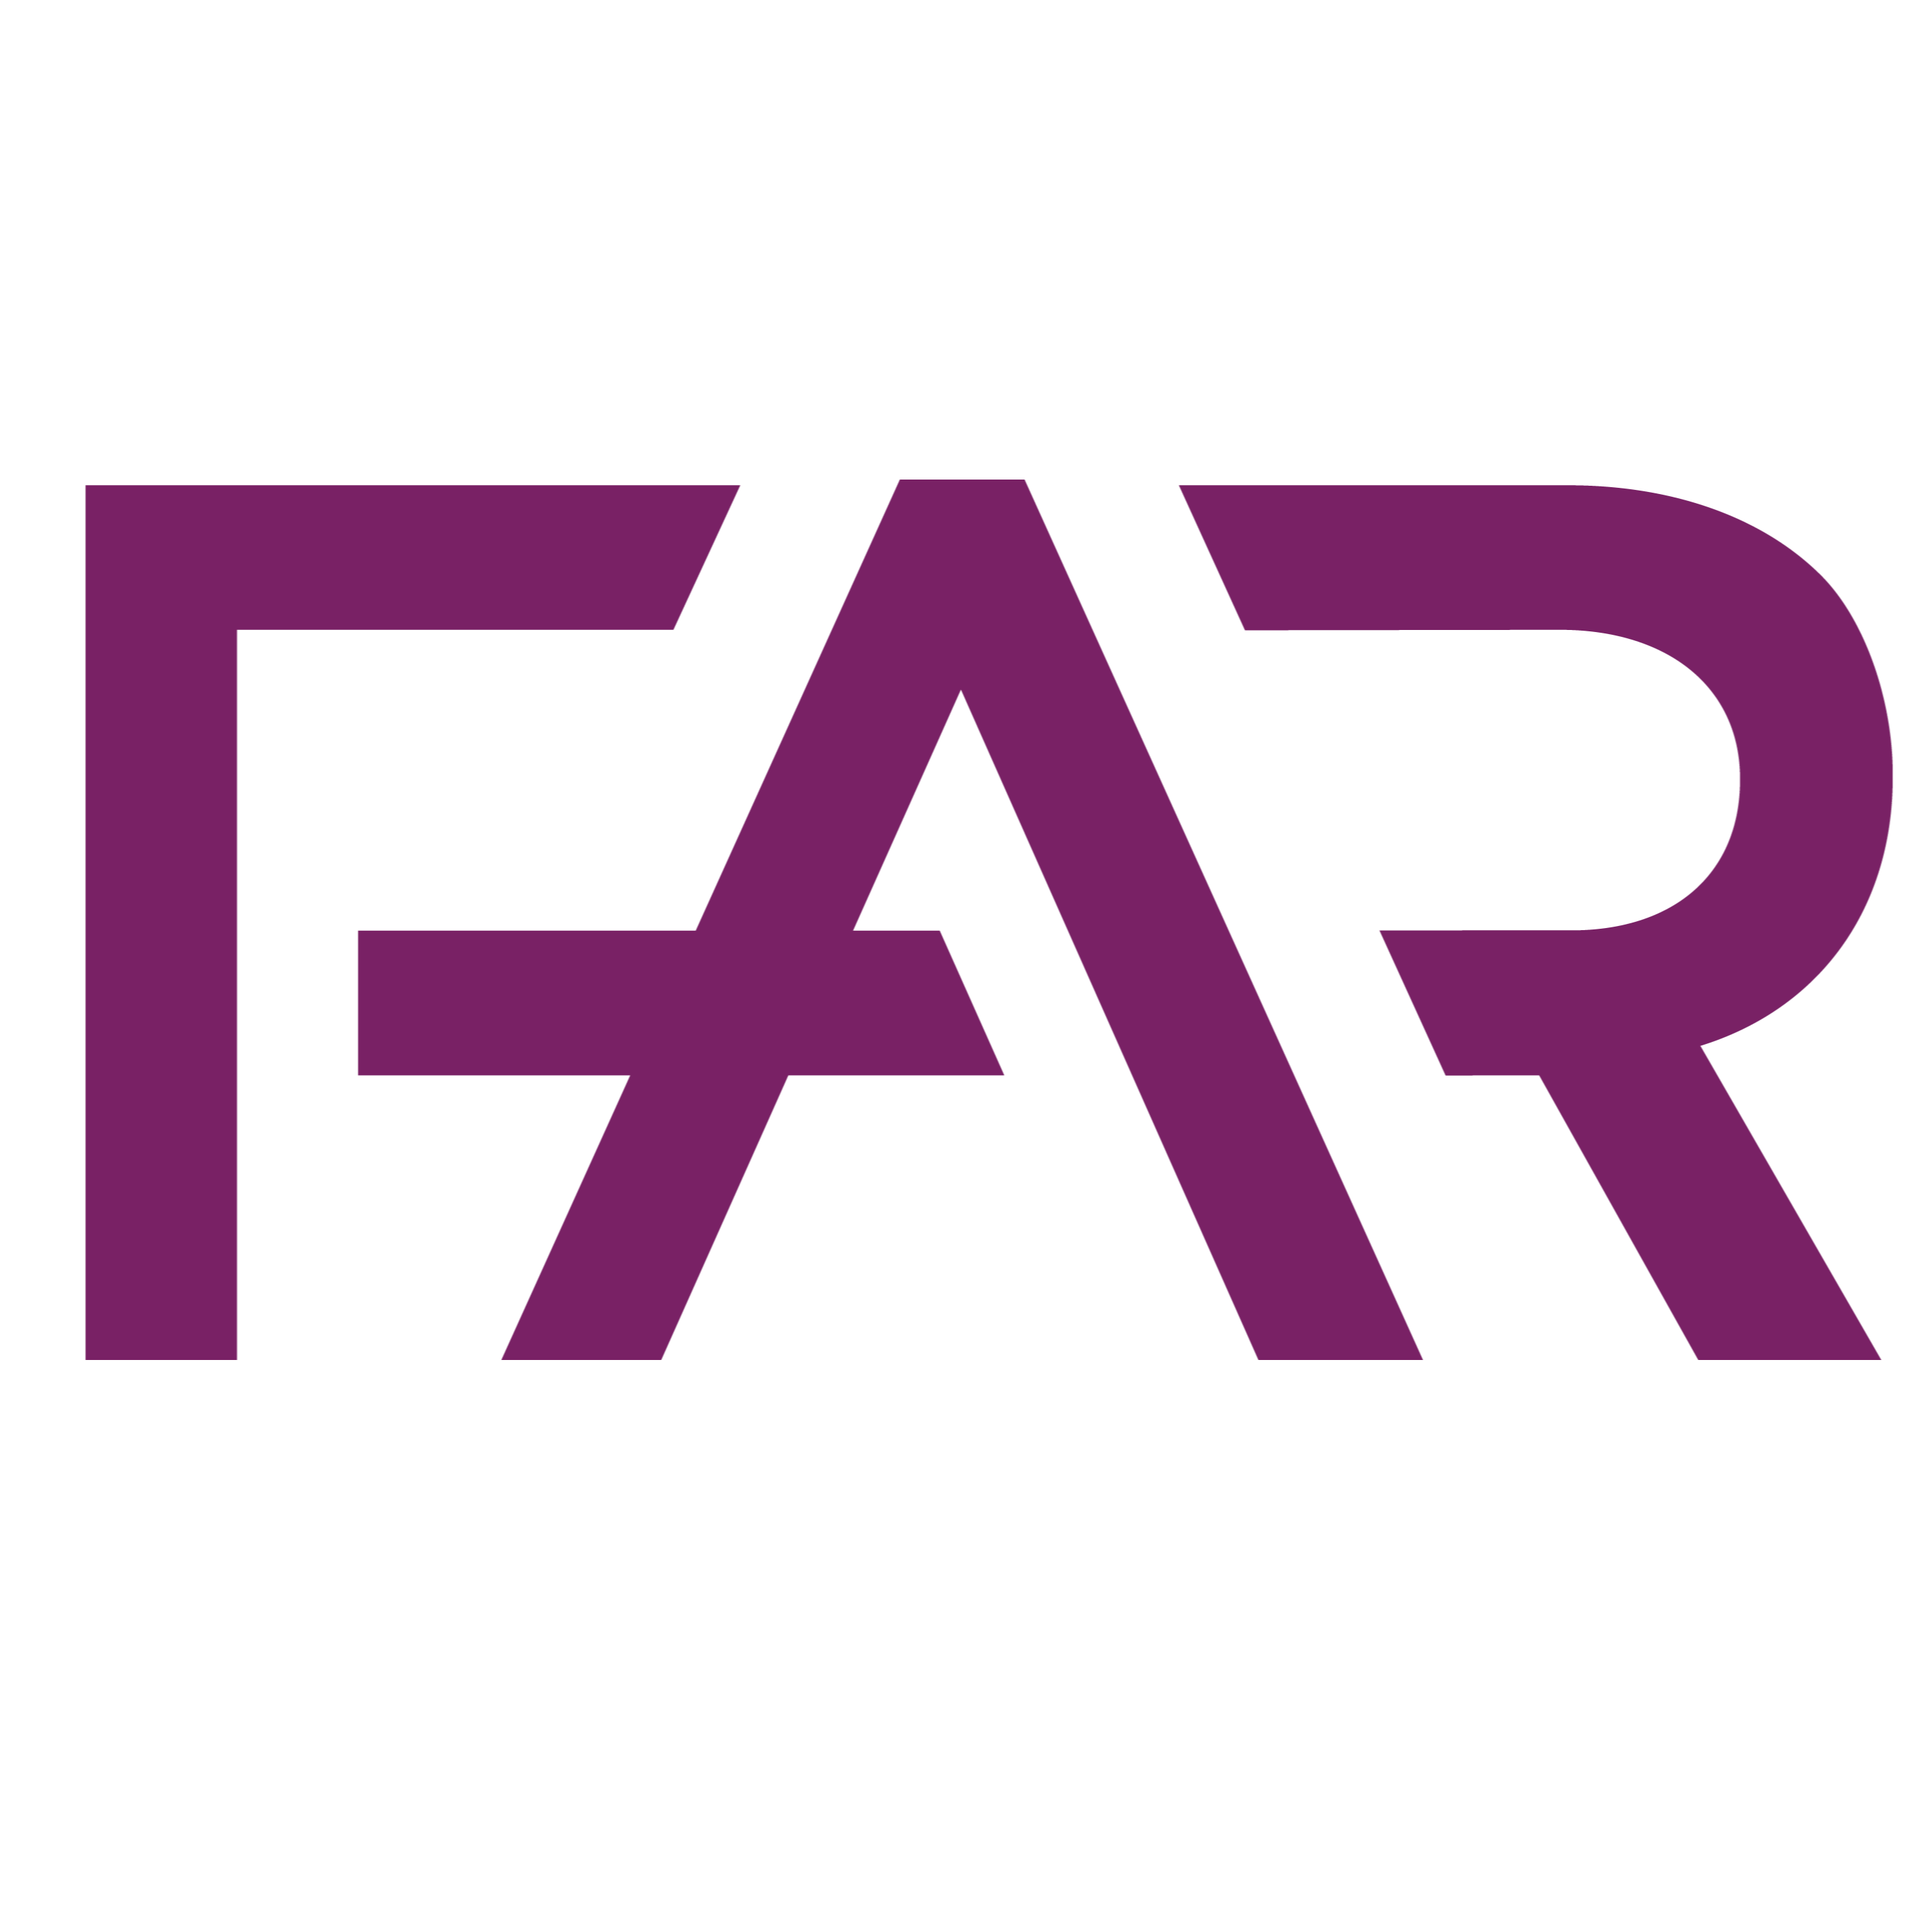 FAR logotyp